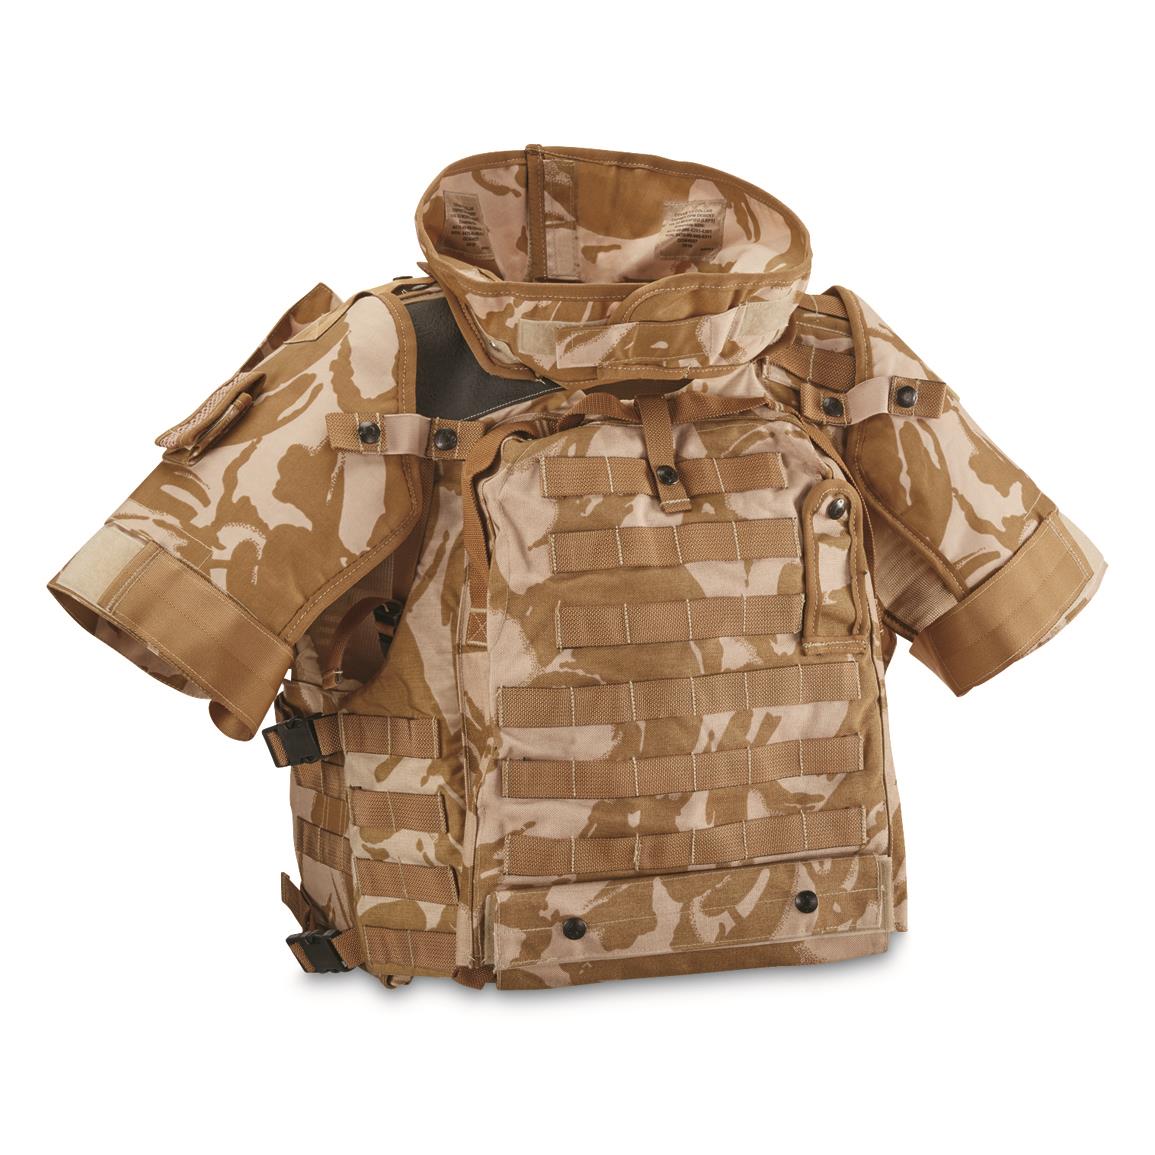 British Military Surplus Armor Vest, New